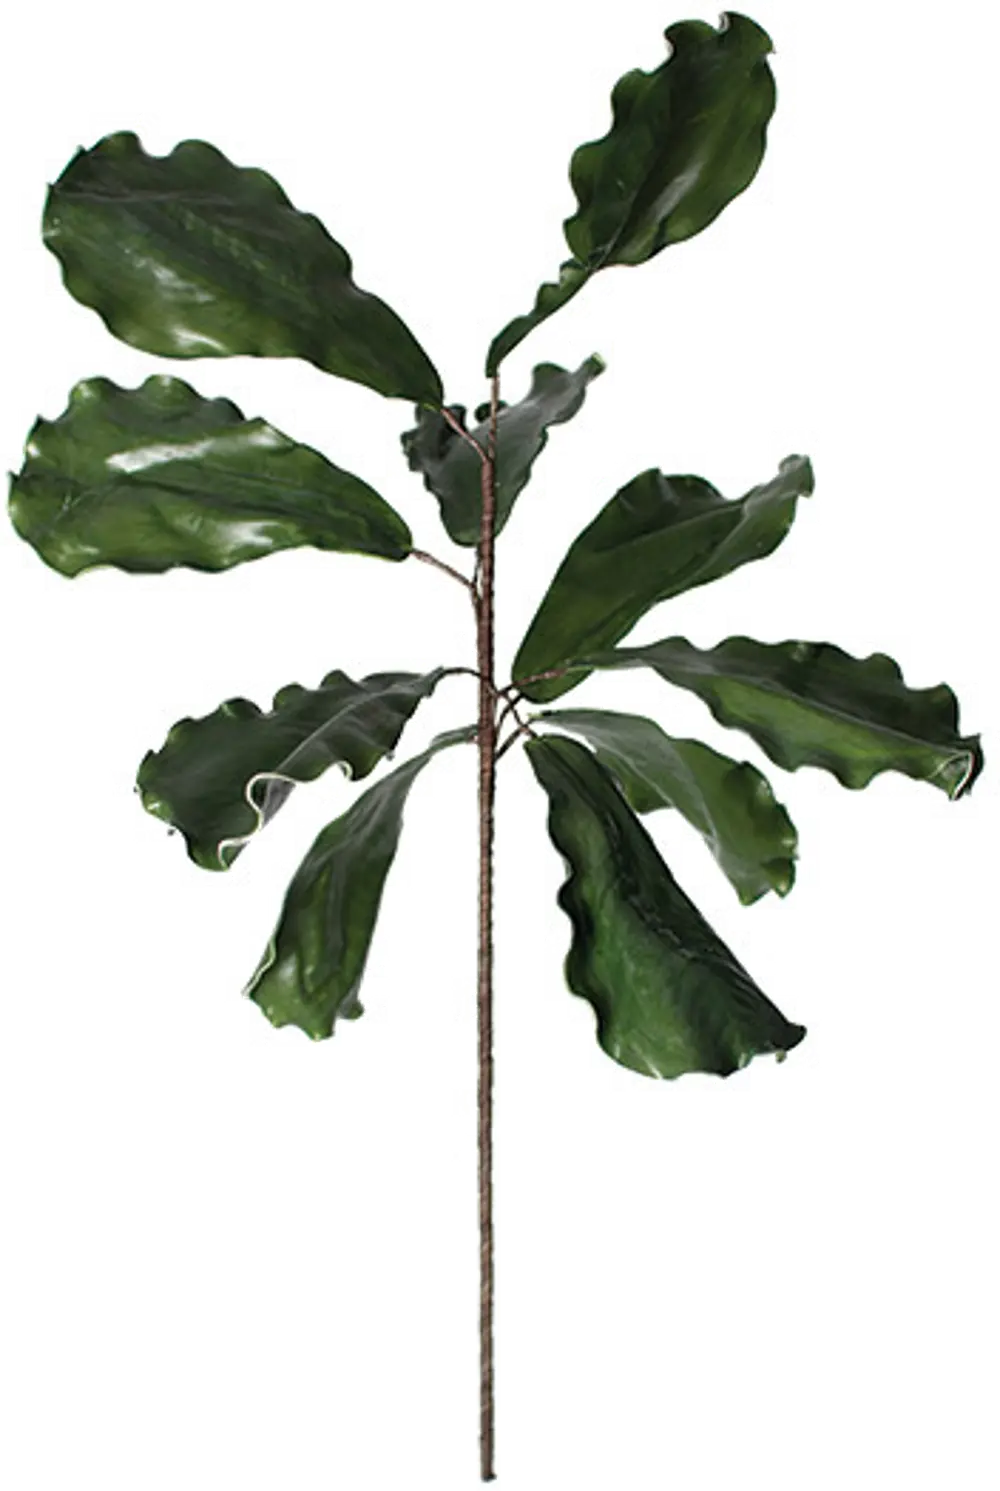 Green Fig Leaf Stem for Arrangement-1